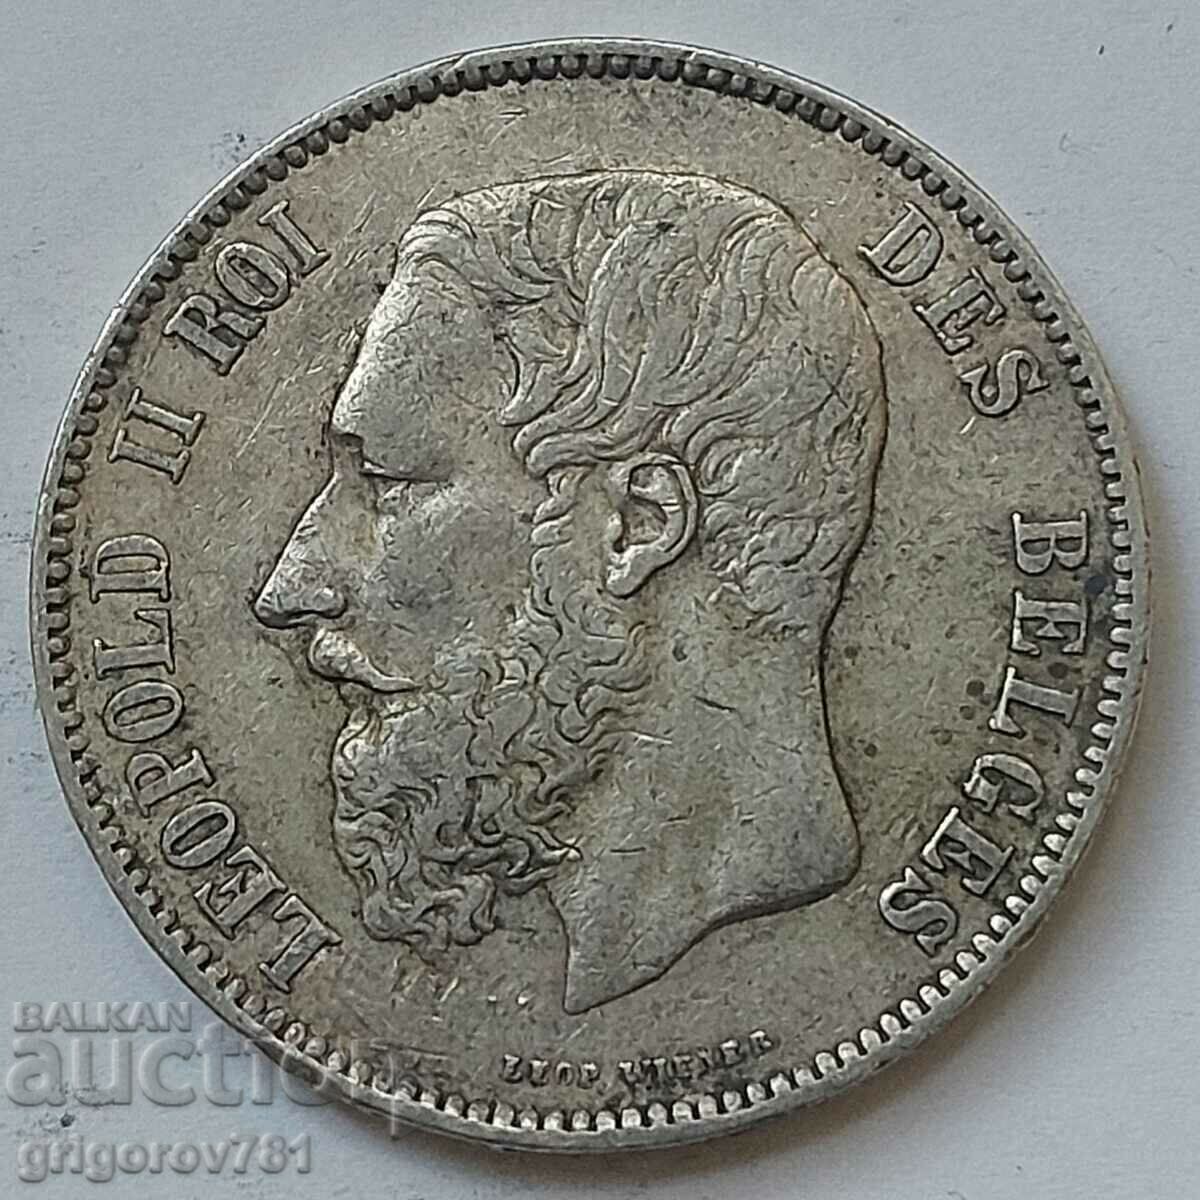 5 Francs Silver Belgium 1873 Silver Coin #180